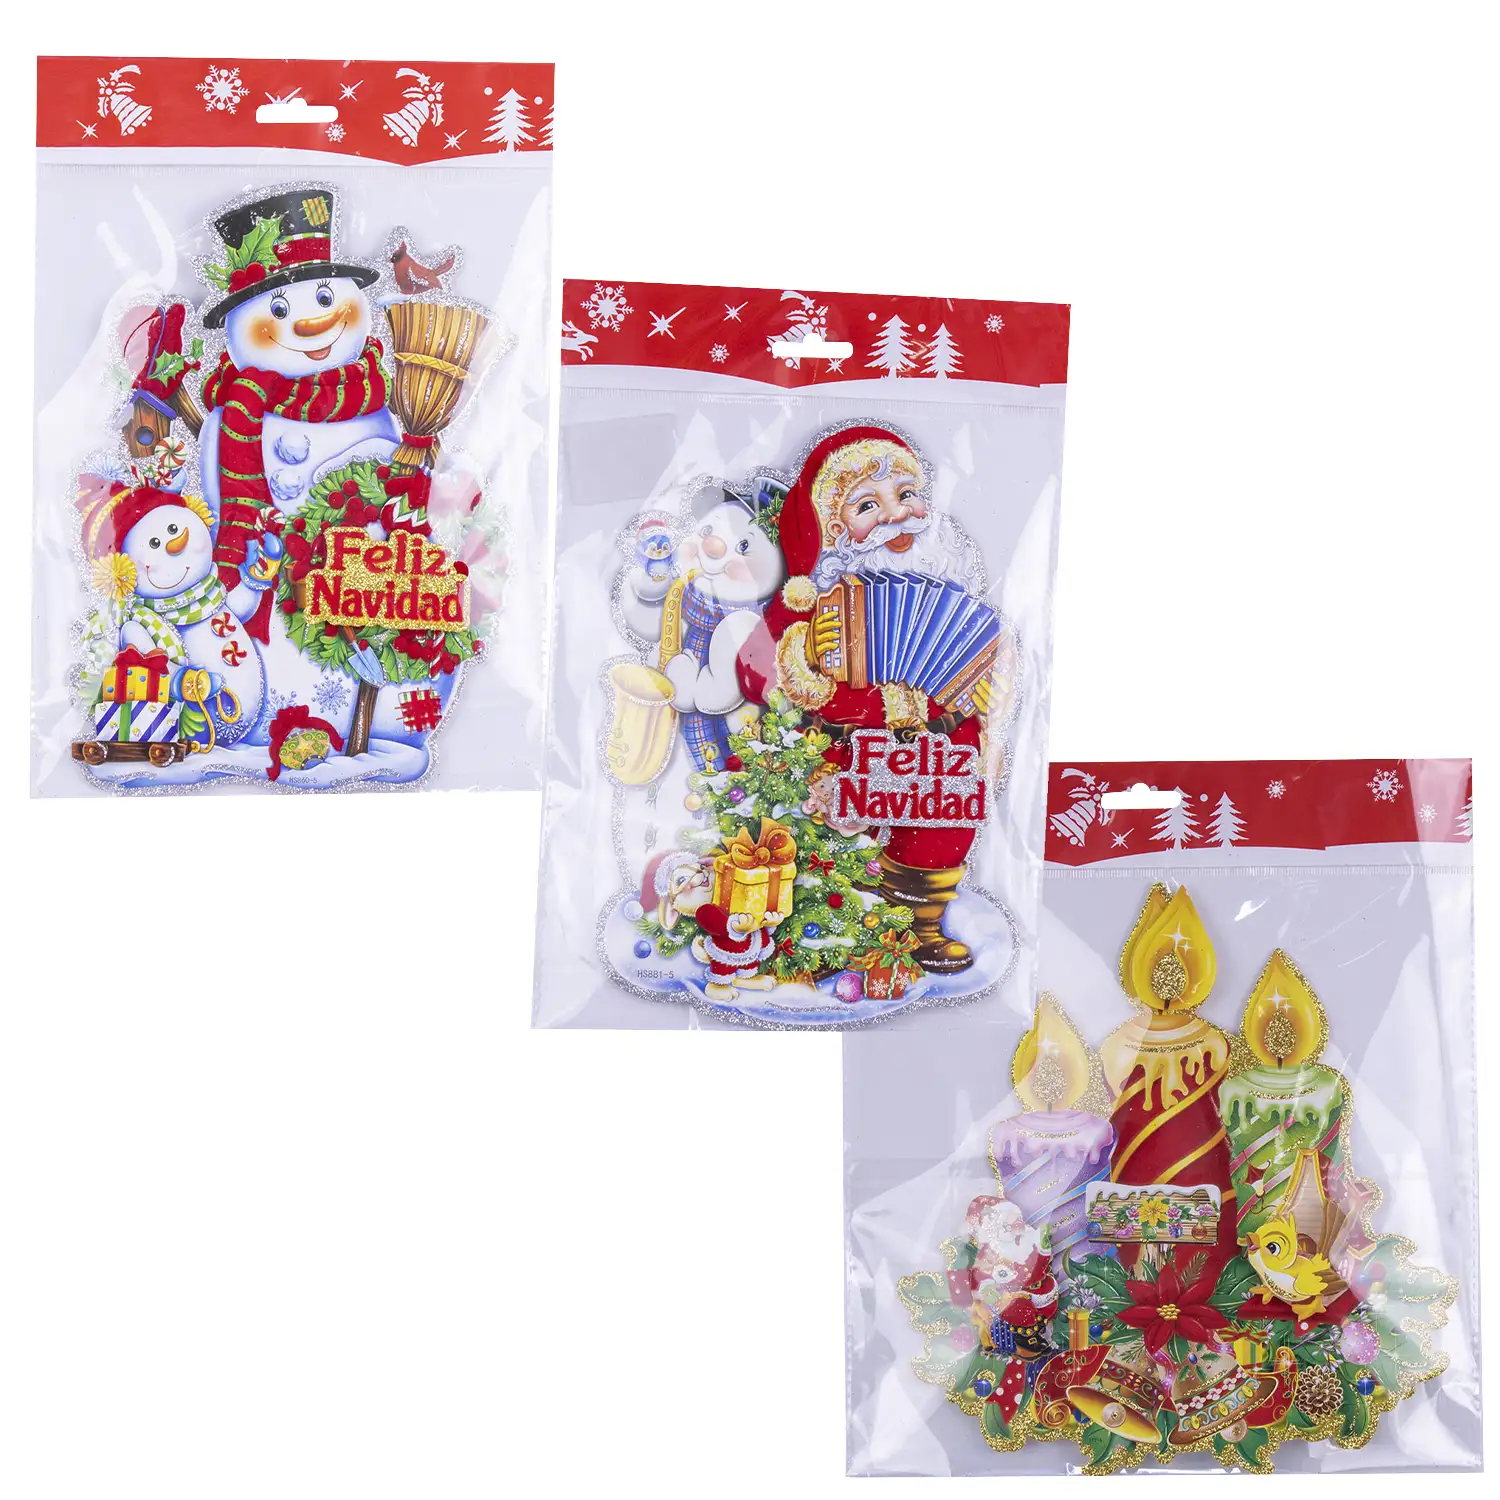 Pack de 3 unidades decoración navideña con efecto 3D, purpurina y fieltro suave.